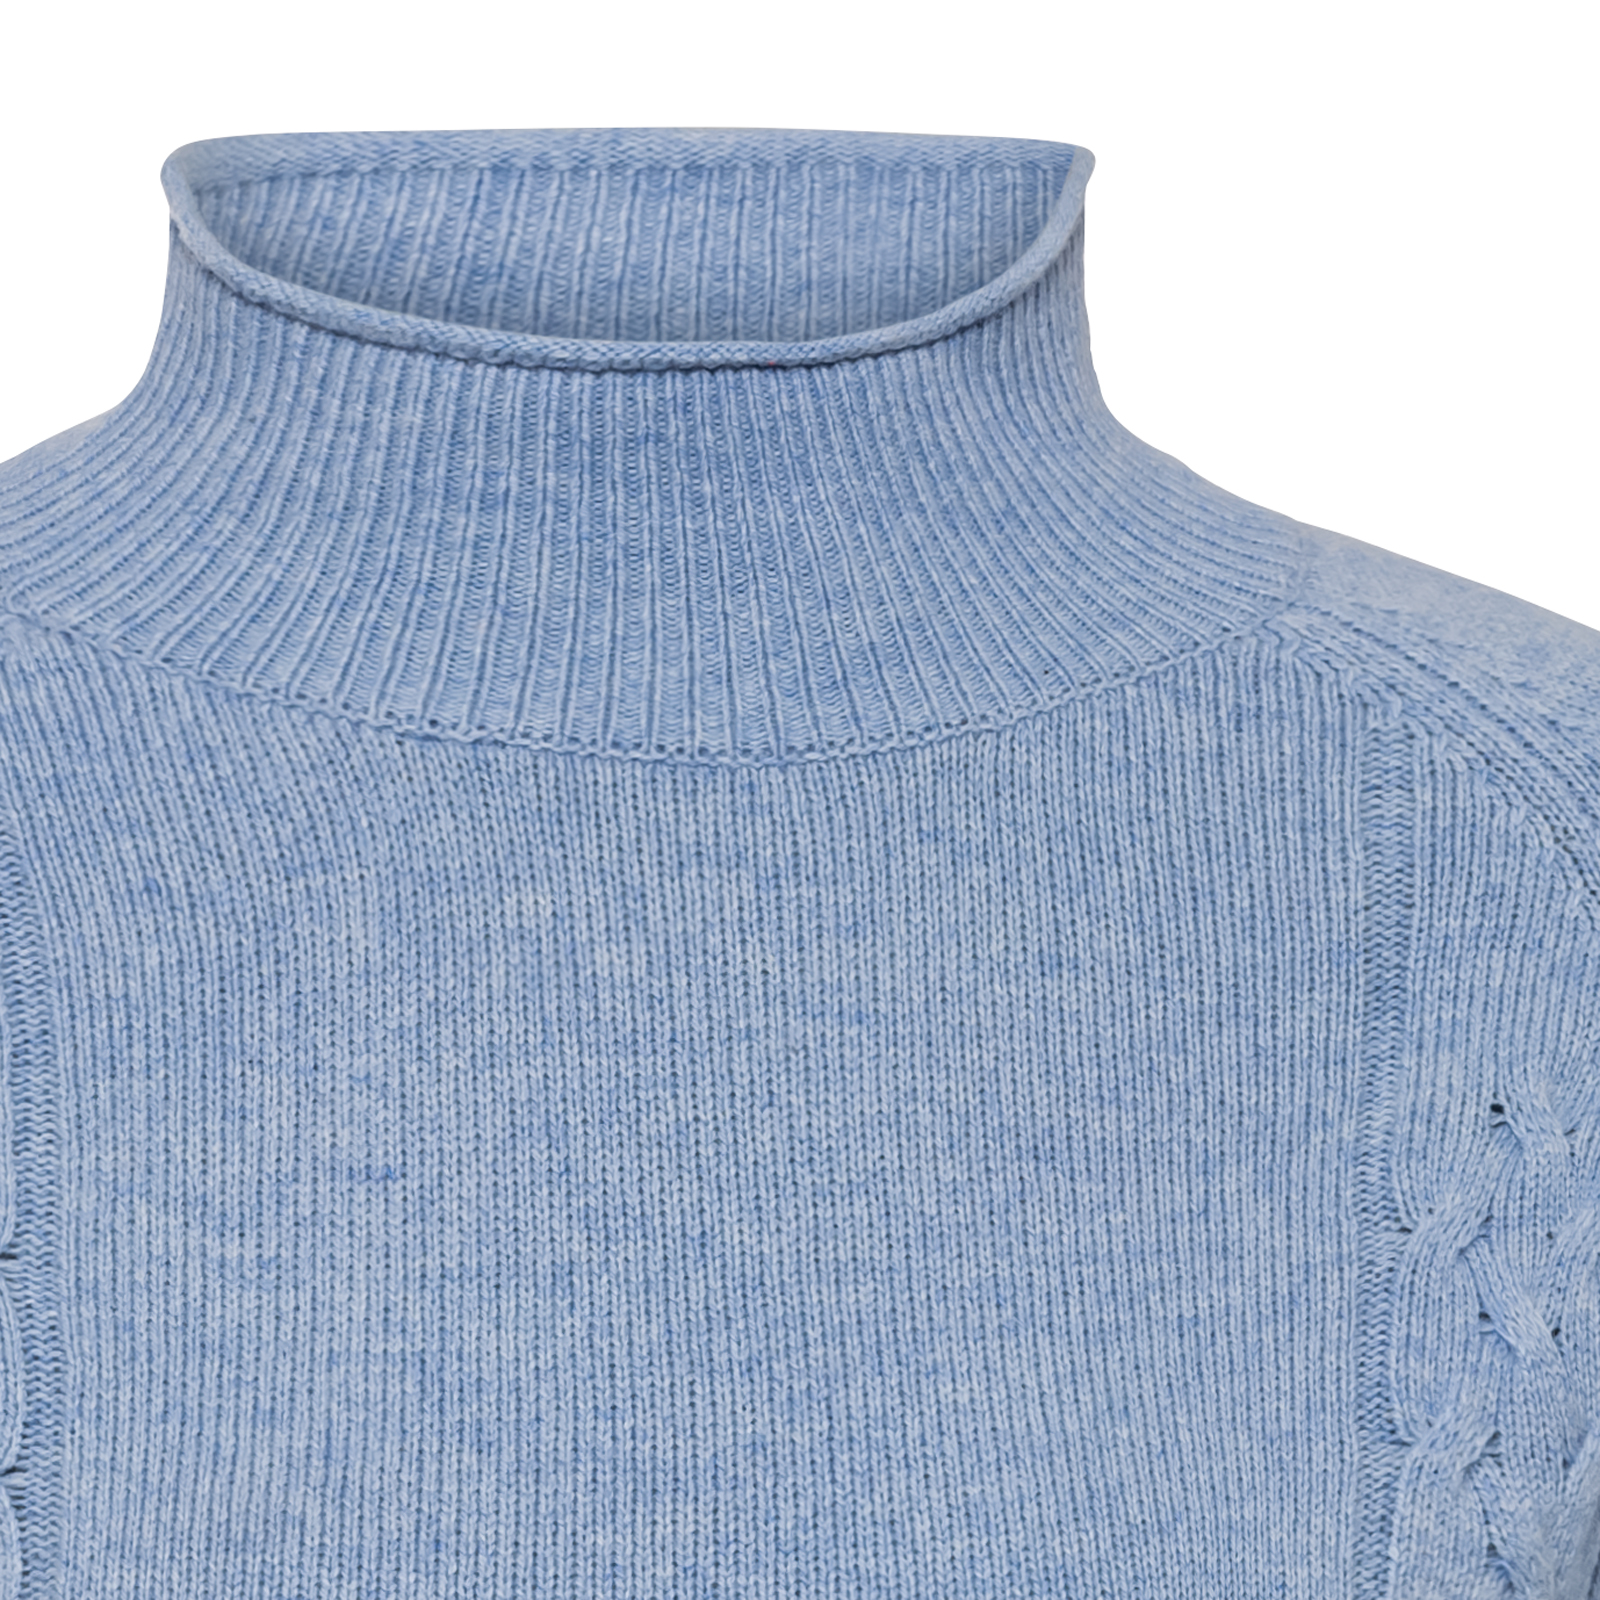 Jersey sostenible de punto con lana merina para mujer